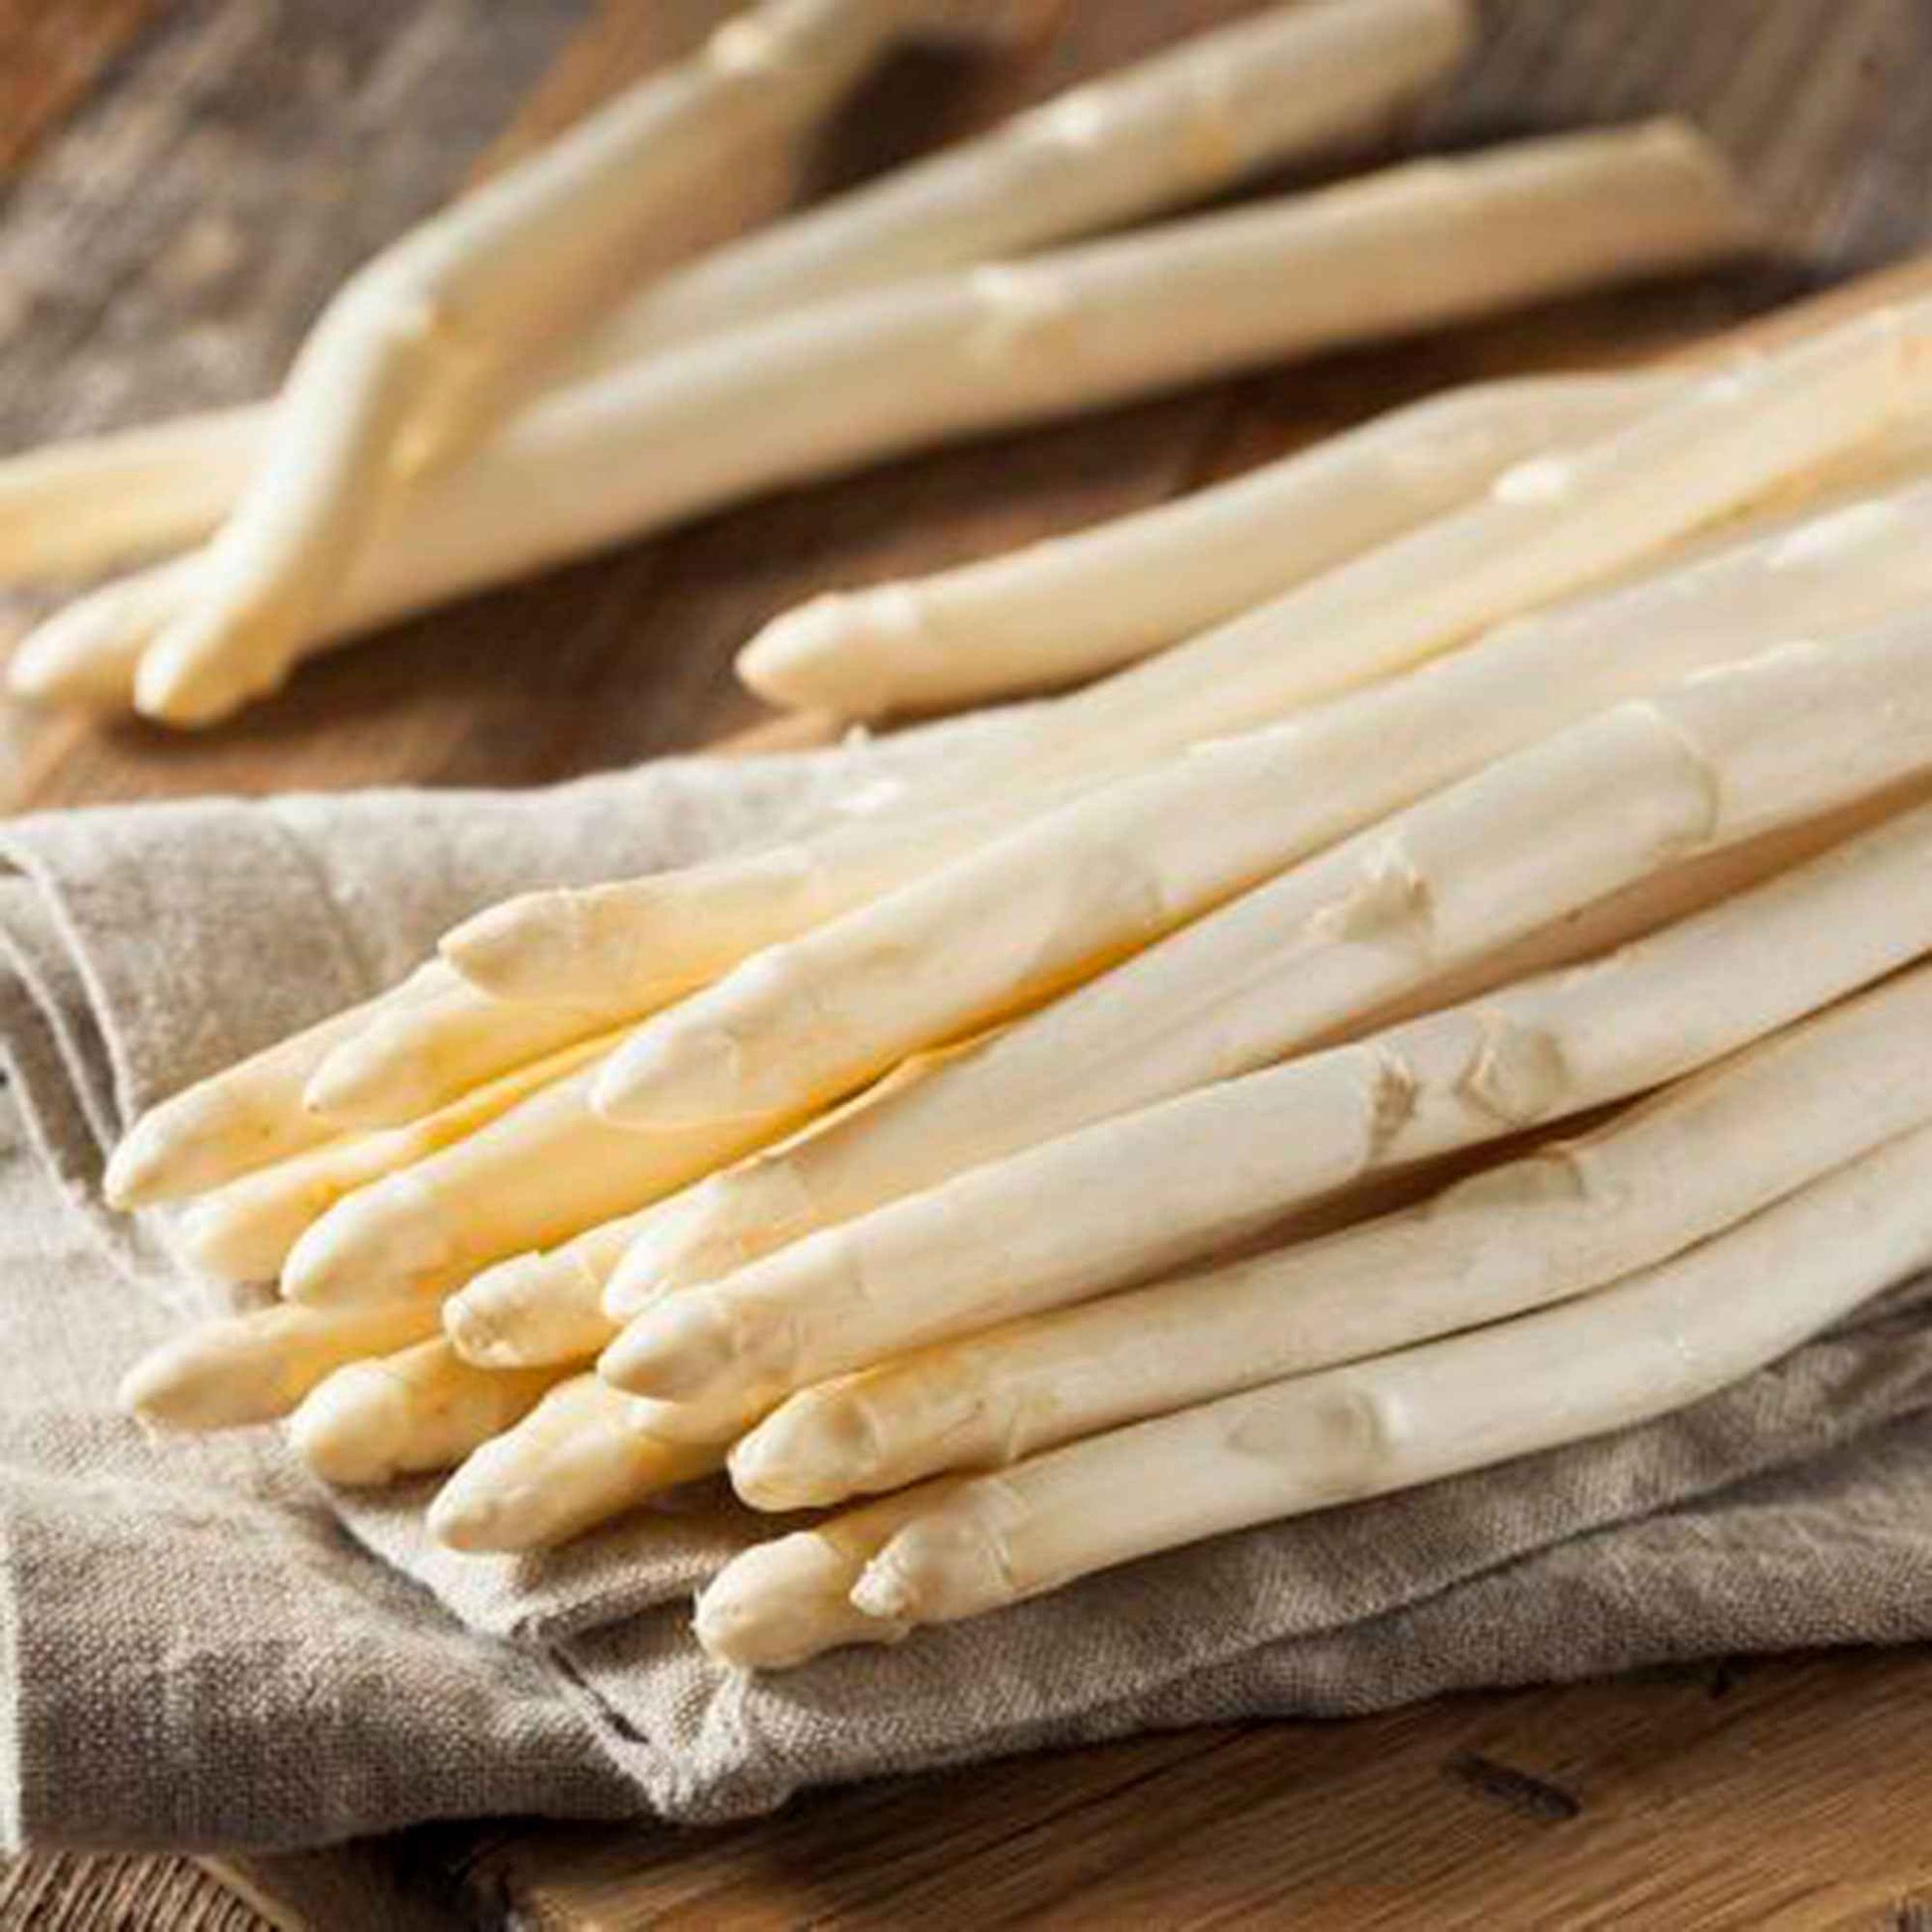 Witte Asparagus 'Vitalim' kopen | Bakker.com